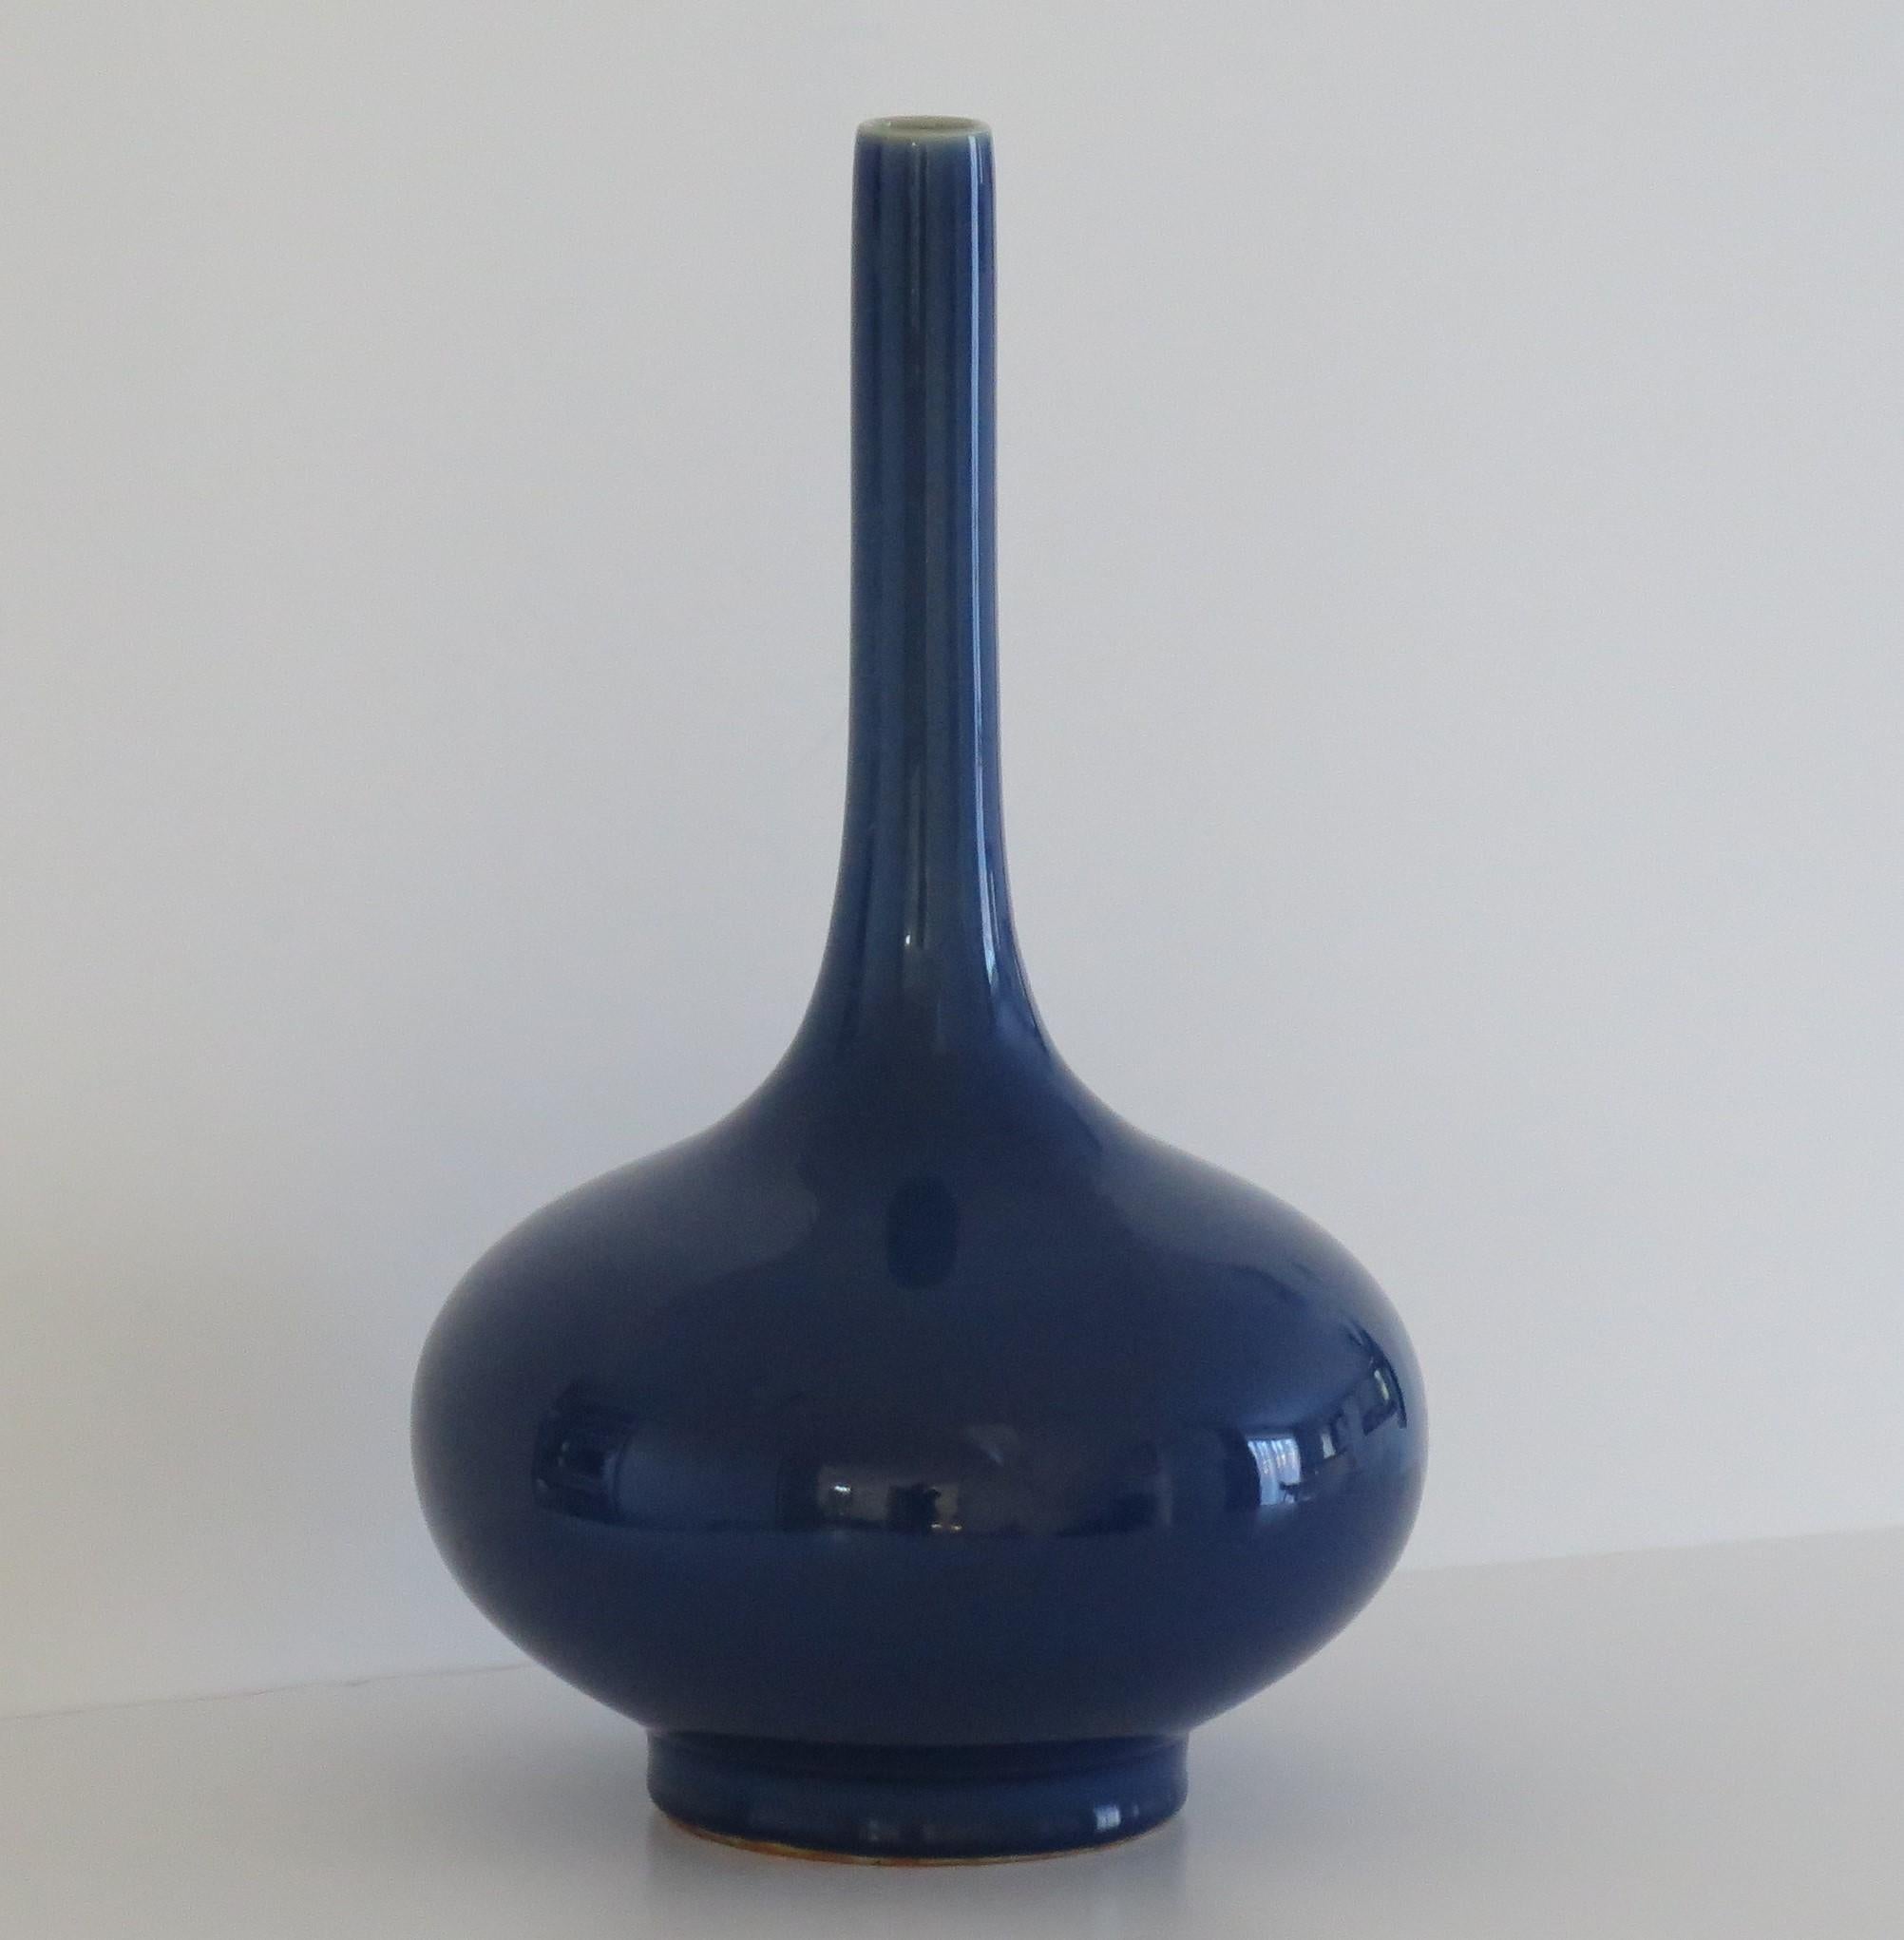 Il s'agit d'un très beau vase-tonneau chinois, très décoratif, avec une glaçure monochrome ou unique d'un bleu saphir très fin,  que nous datons de la fin du 19e siècle,  Période Qing .

Ce vase d'exportation chinois est bien empoté sur un pied